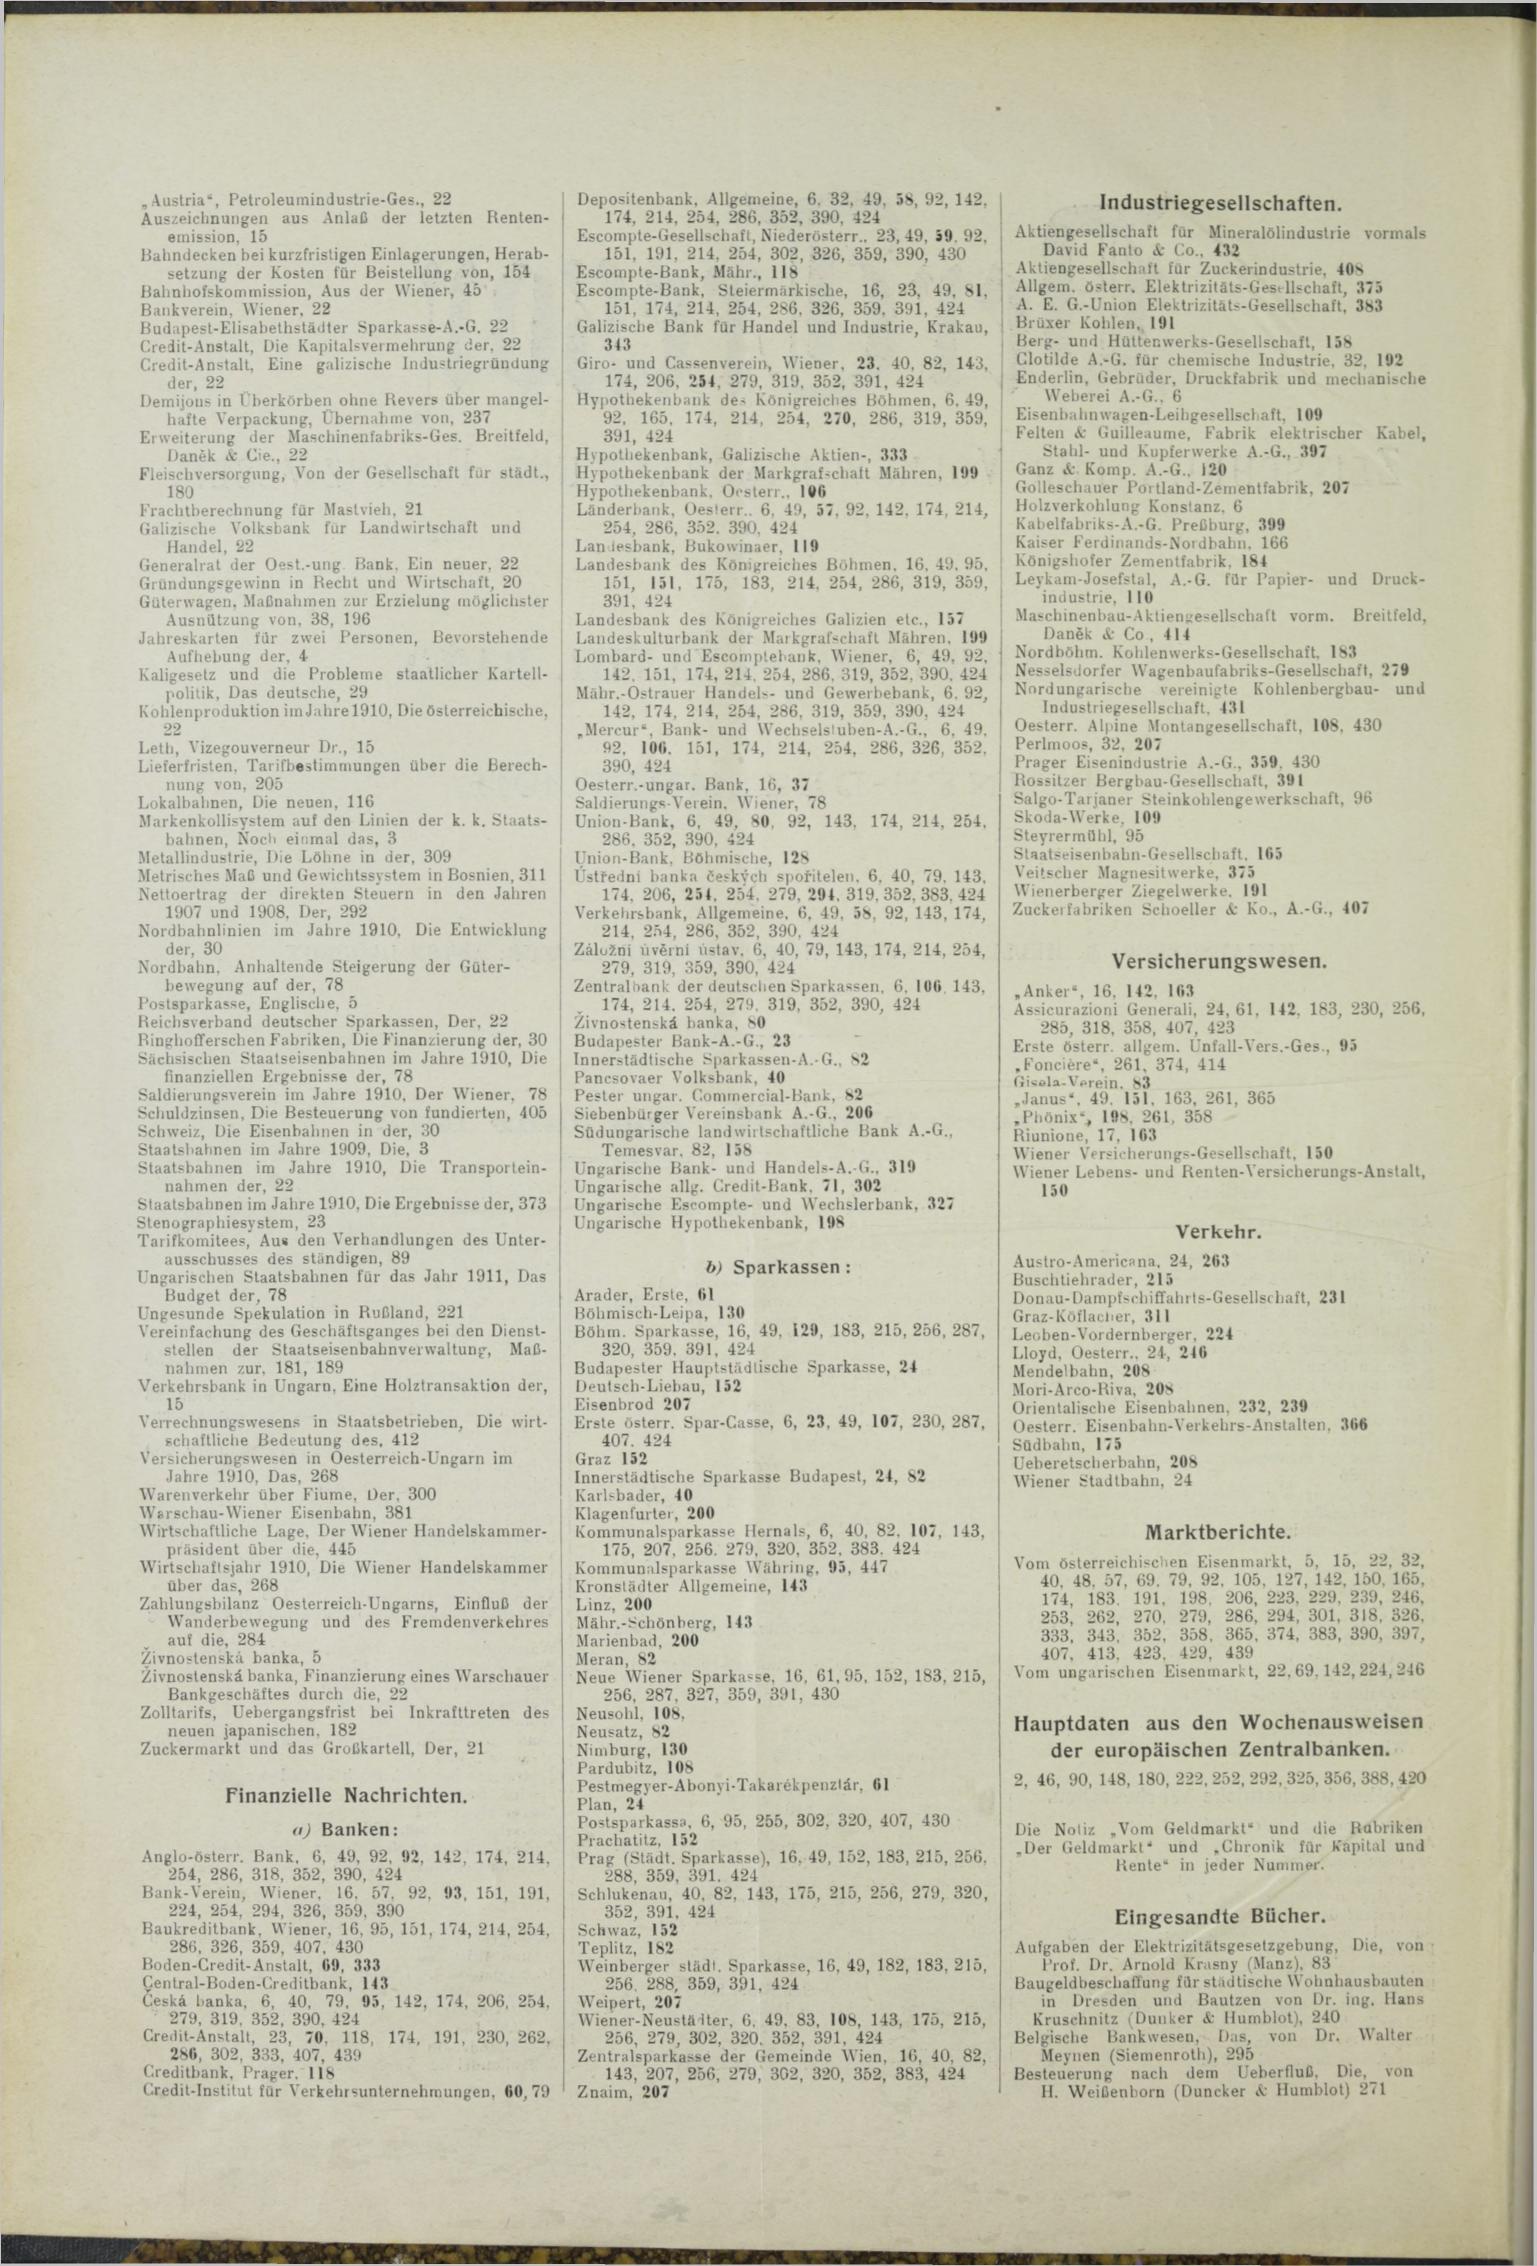 Der Tresor 02.12.1911 - Seite 10